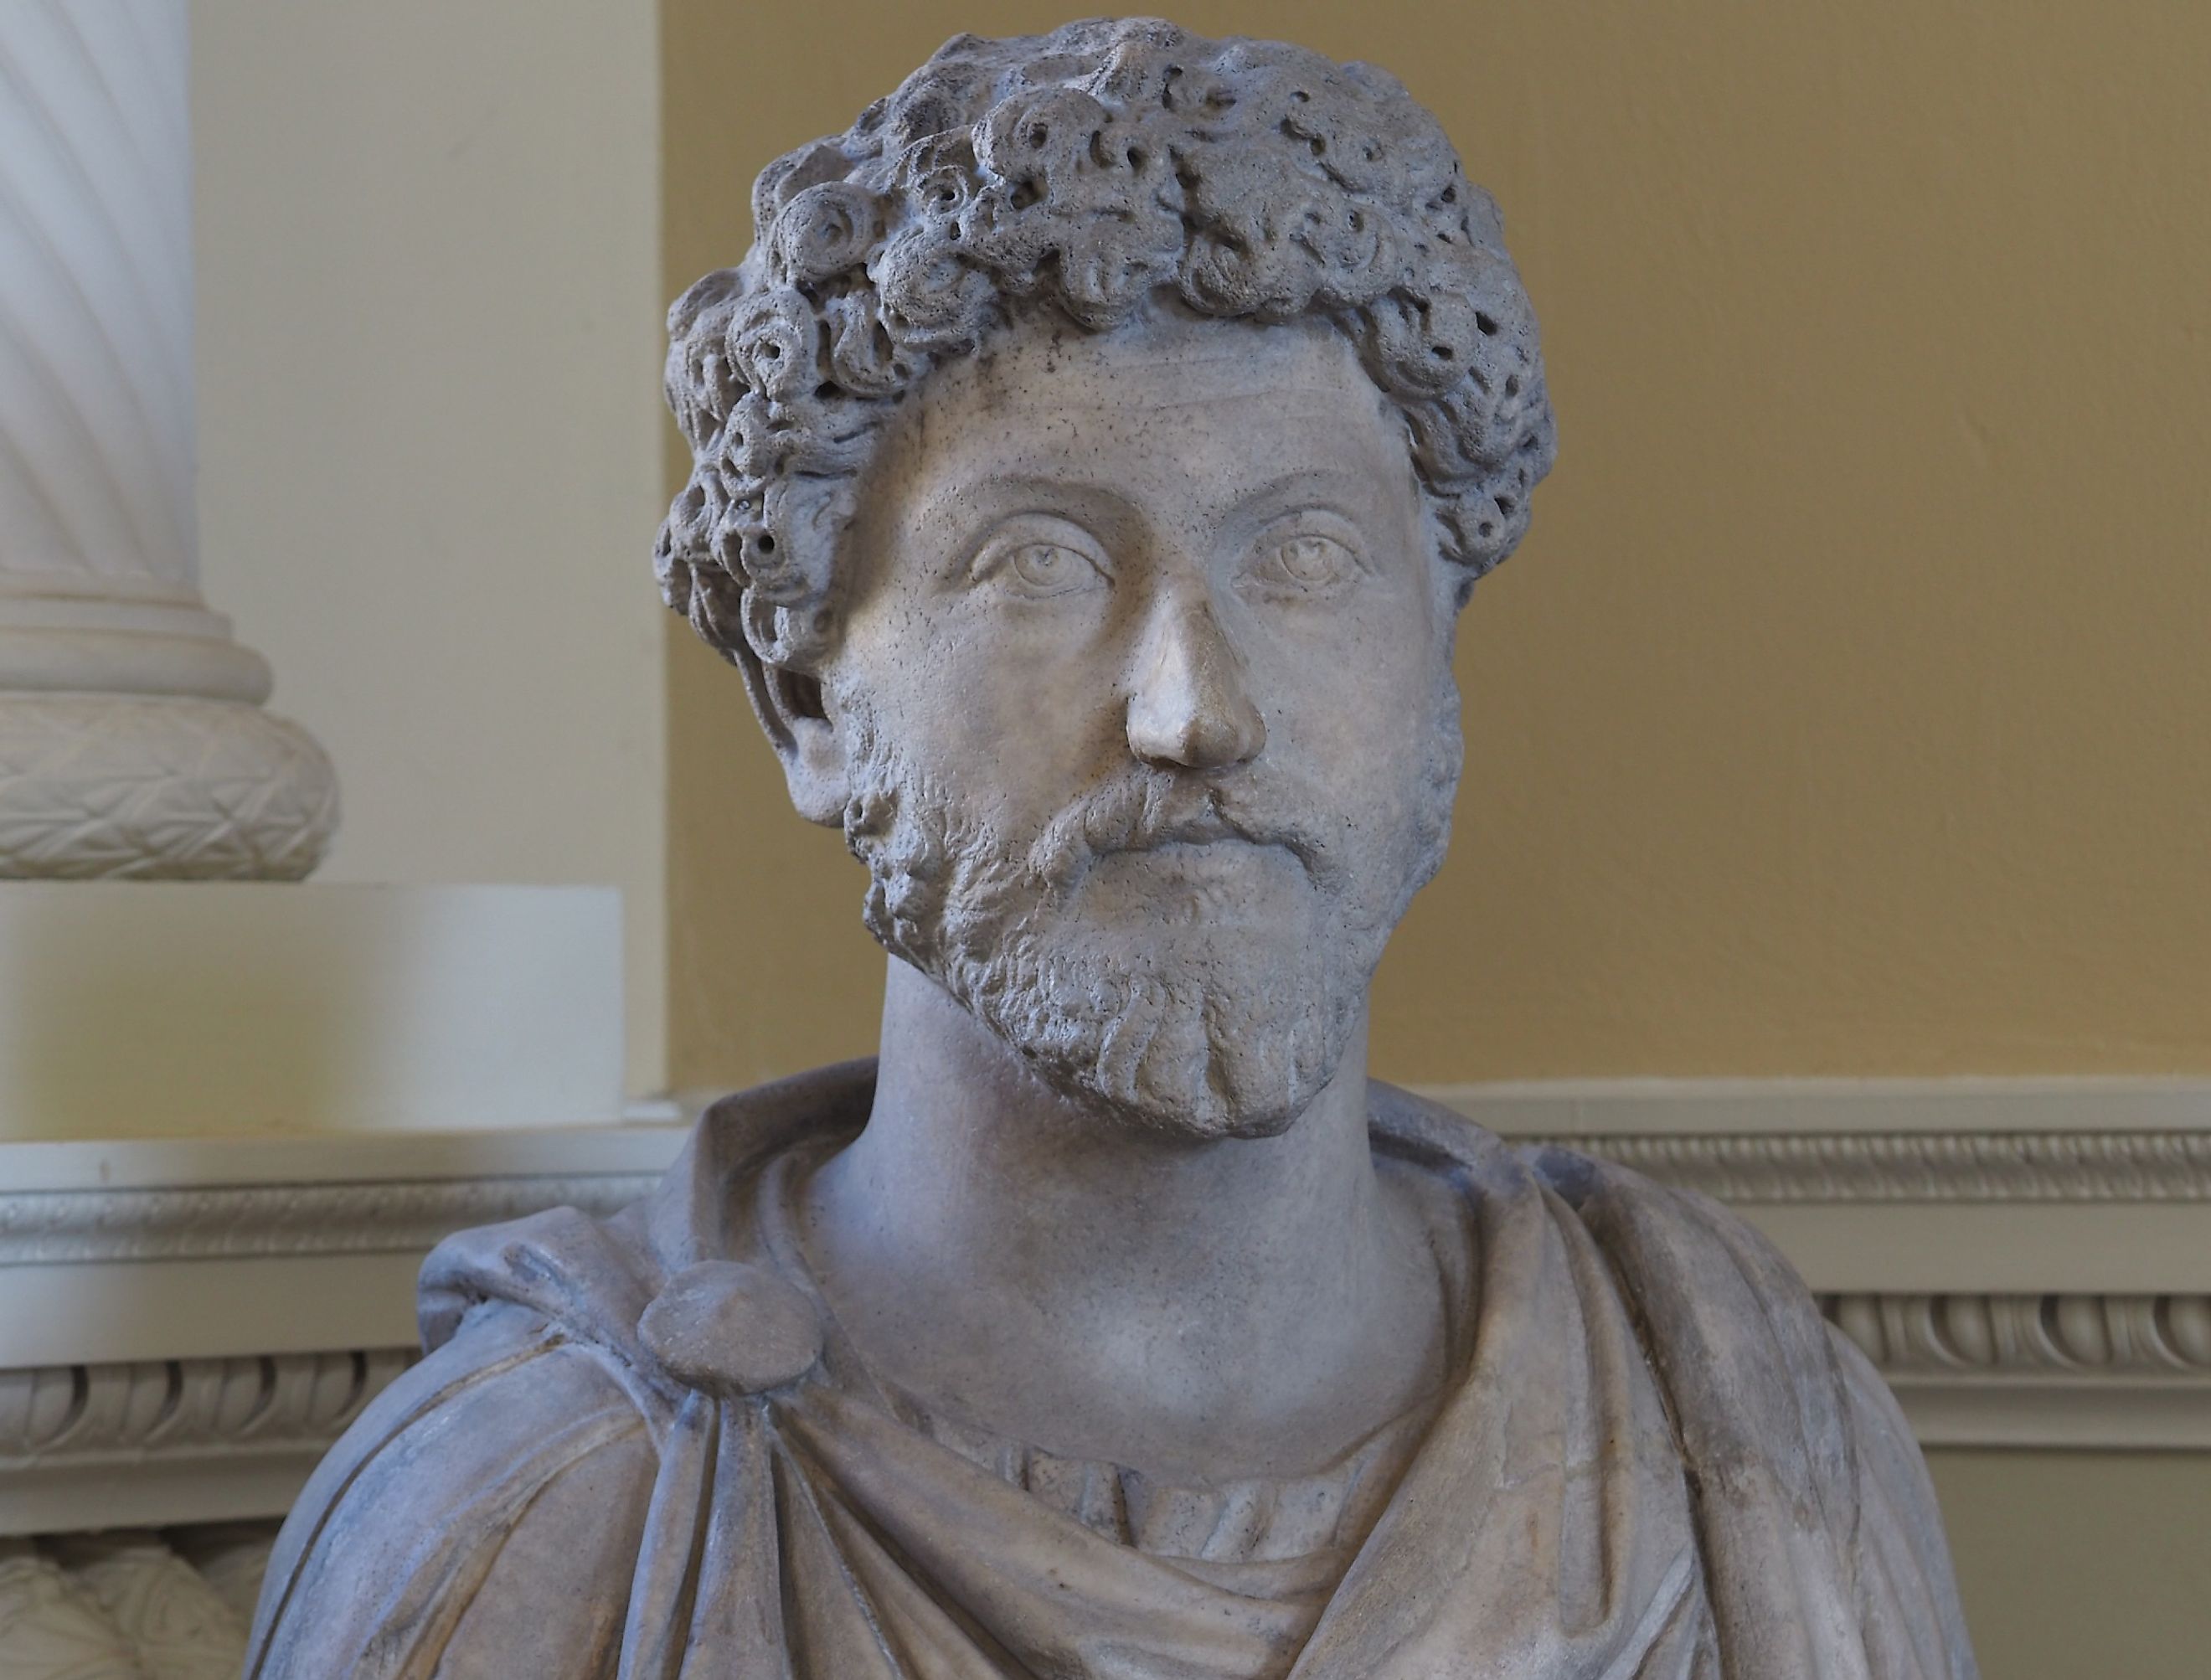 Statue of the head of Emperor Marcus Aurelius, a Stoic philosopher.